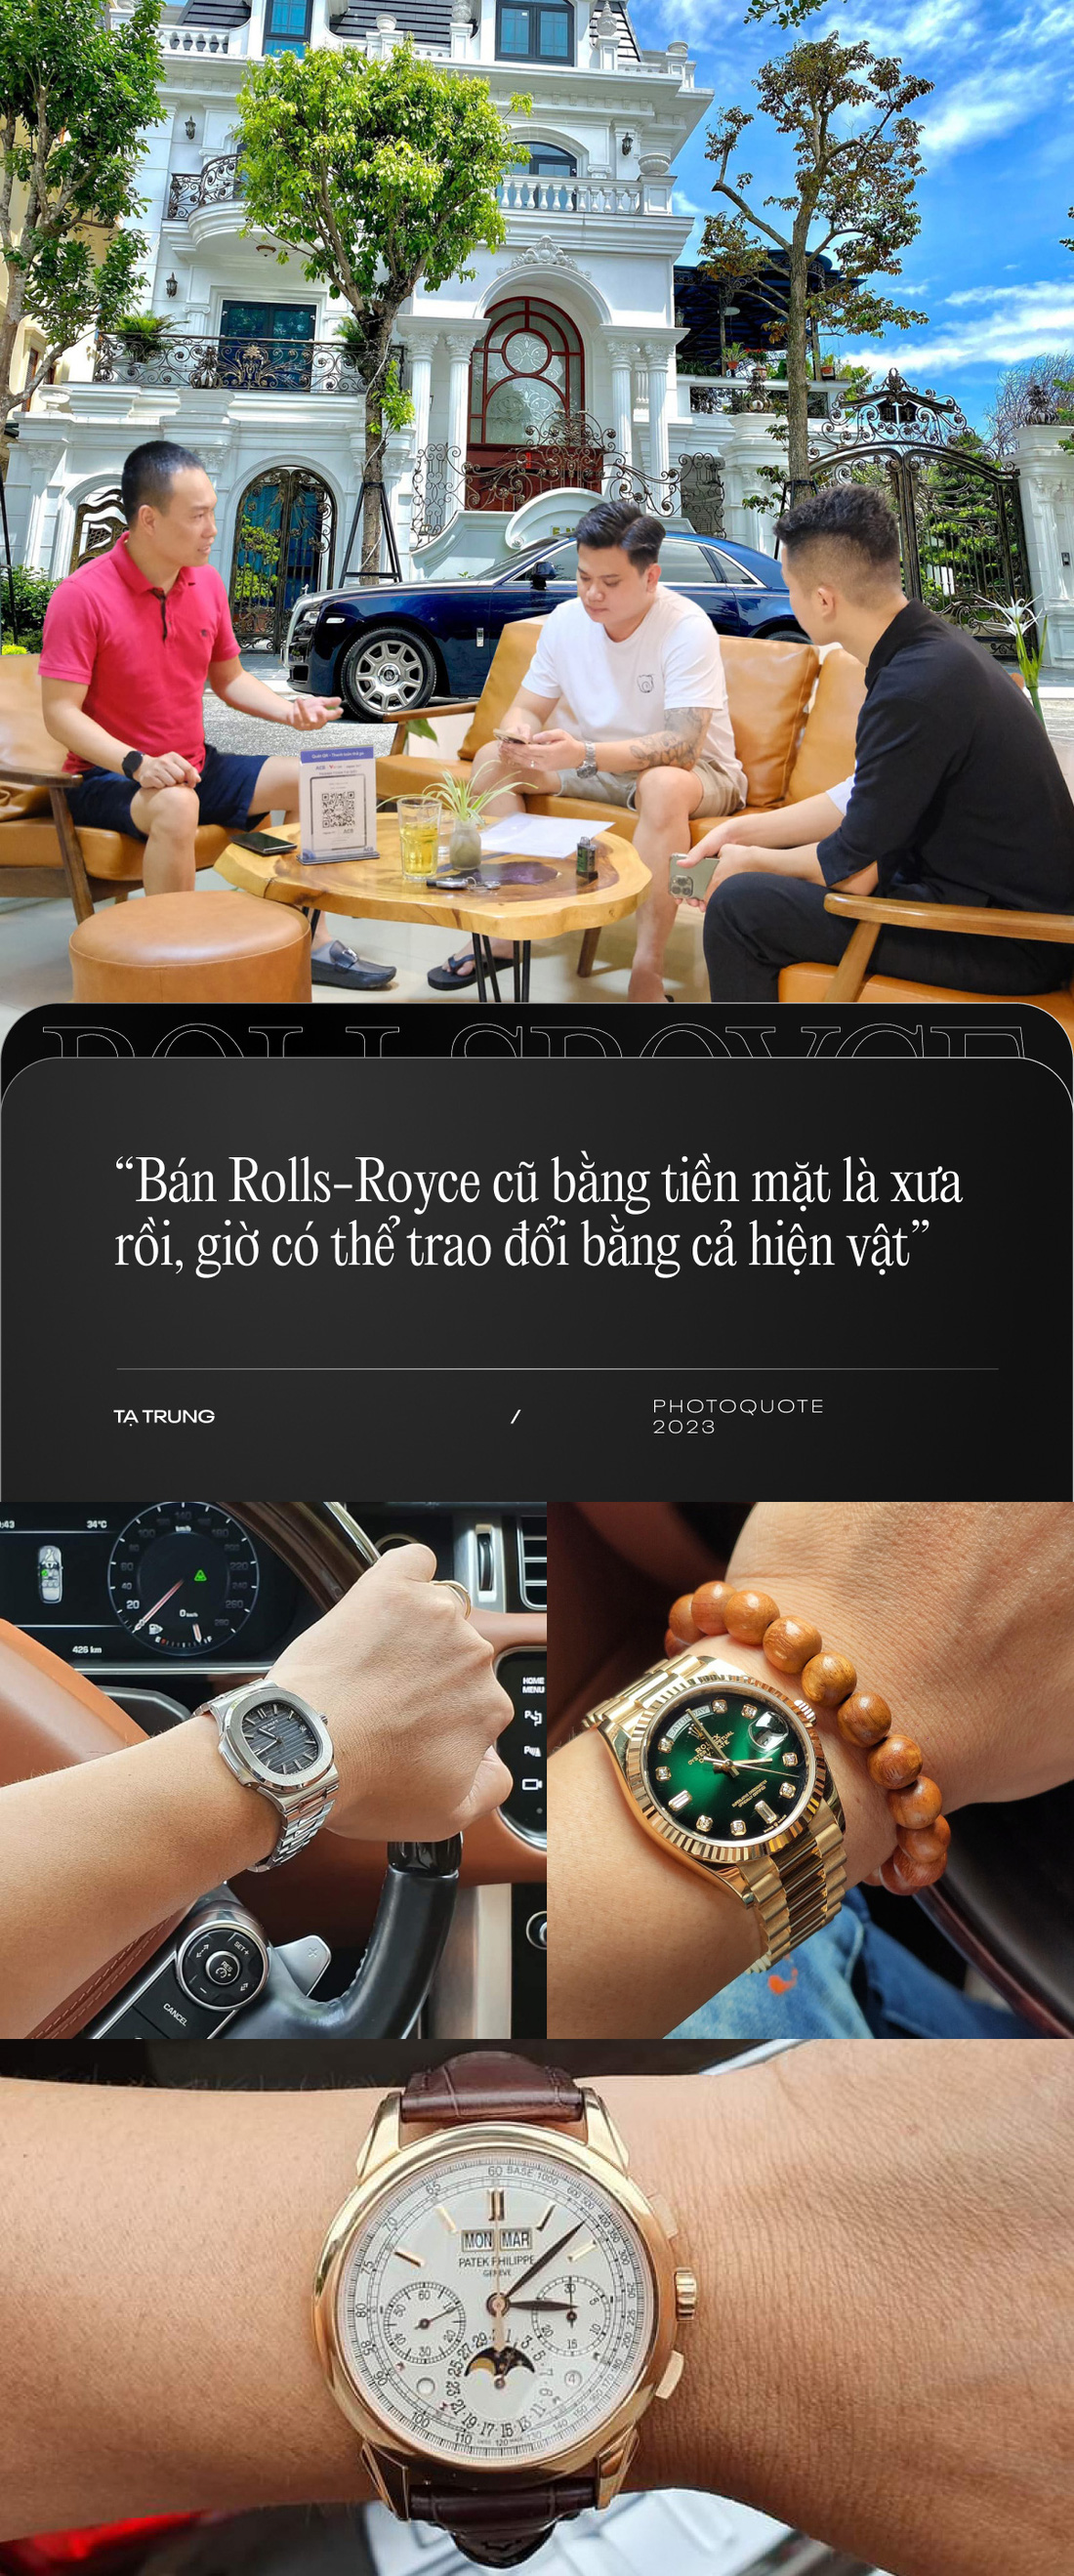 Bán Rolls-Royce cũ cho khách Việt: Nhiều người đổi bằng bất động sản, đồng hồ, kim cương- Ảnh 10.